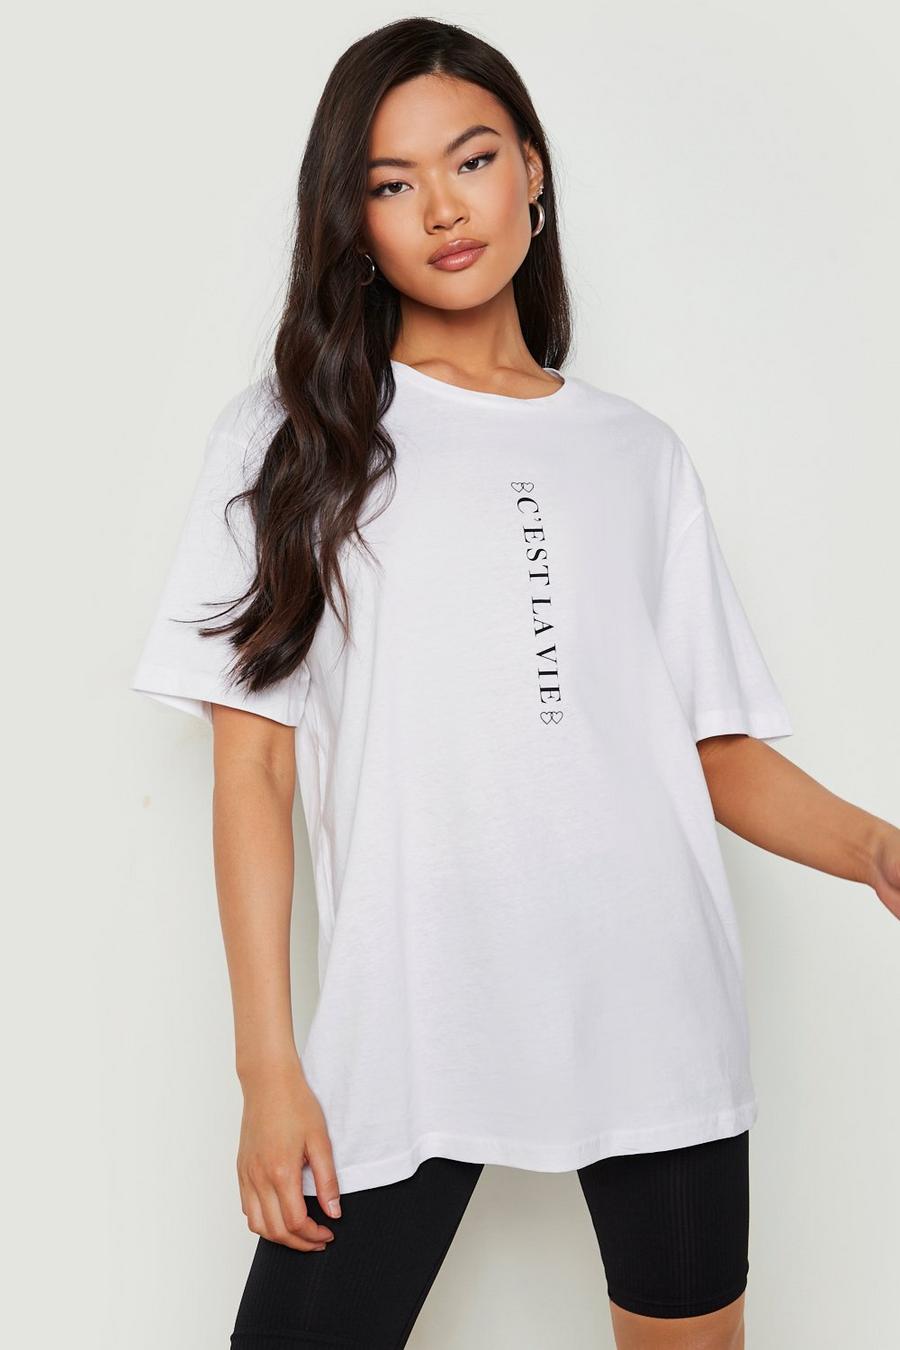 T-Shirt mit C'est La Vie Slogan, Weiß white